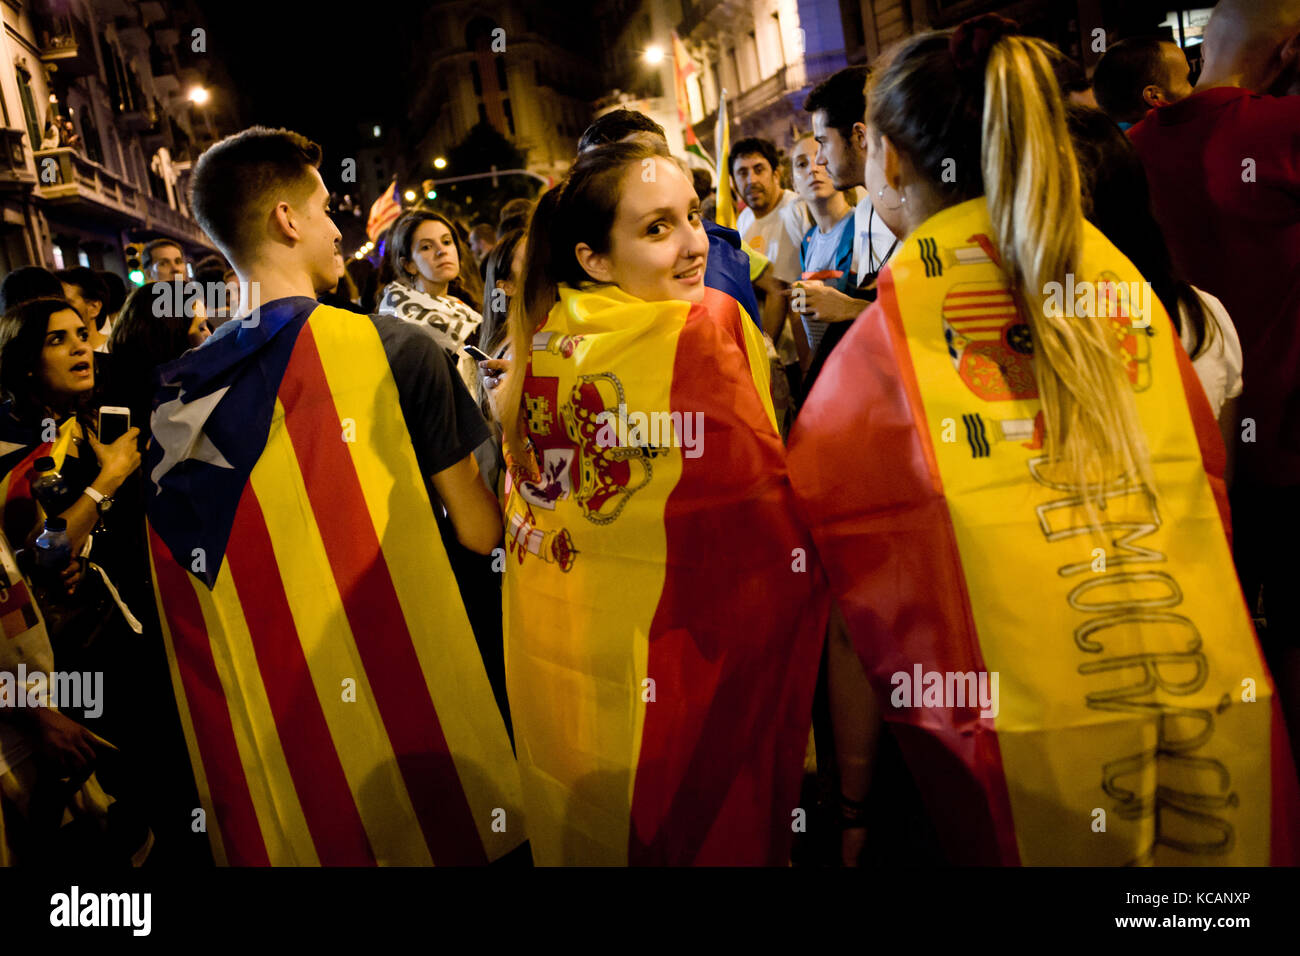 Barcelone, Catalogne, espagne. 3ème oct 2017. Les jeunes femmes enveloppés de drapeaux espagnols et d'un homme enveloppé d'un drapeau indépendantiste estelada ou prendre part ensemble à une manifestation contre la brutalité policière espagnole. grève générale journée avec des manifestations massives sur territoire catalan pour protester contre la brutalité par la police lors d'un référendum sur la sécession de la région de l'Espagne qui a laissé près de neuf cent de personnes blessées. crédit : jordi boixareu/zuma/Alamy fil live news Banque D'Images